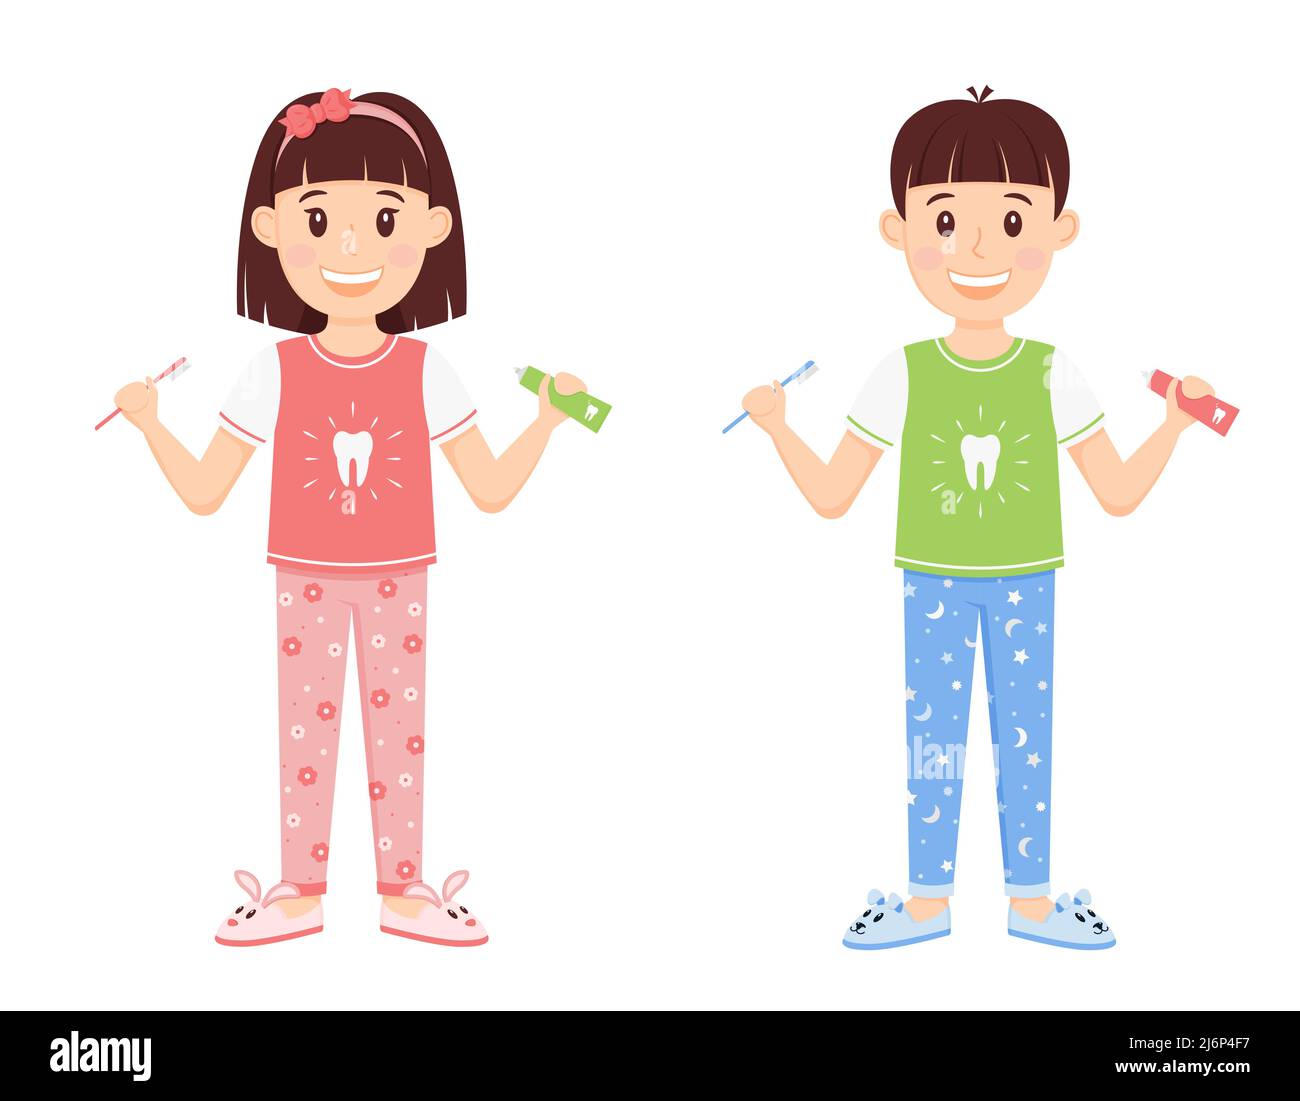 Kinder Junge und Mädchen im Schlafanzug stehen mit Zahnpasta und einem Pinsel. Niedliche Comic-Figuren lächeln. Pflege für die Zahngesundheit, einen gesunden Lebensstil. Stock Vektor